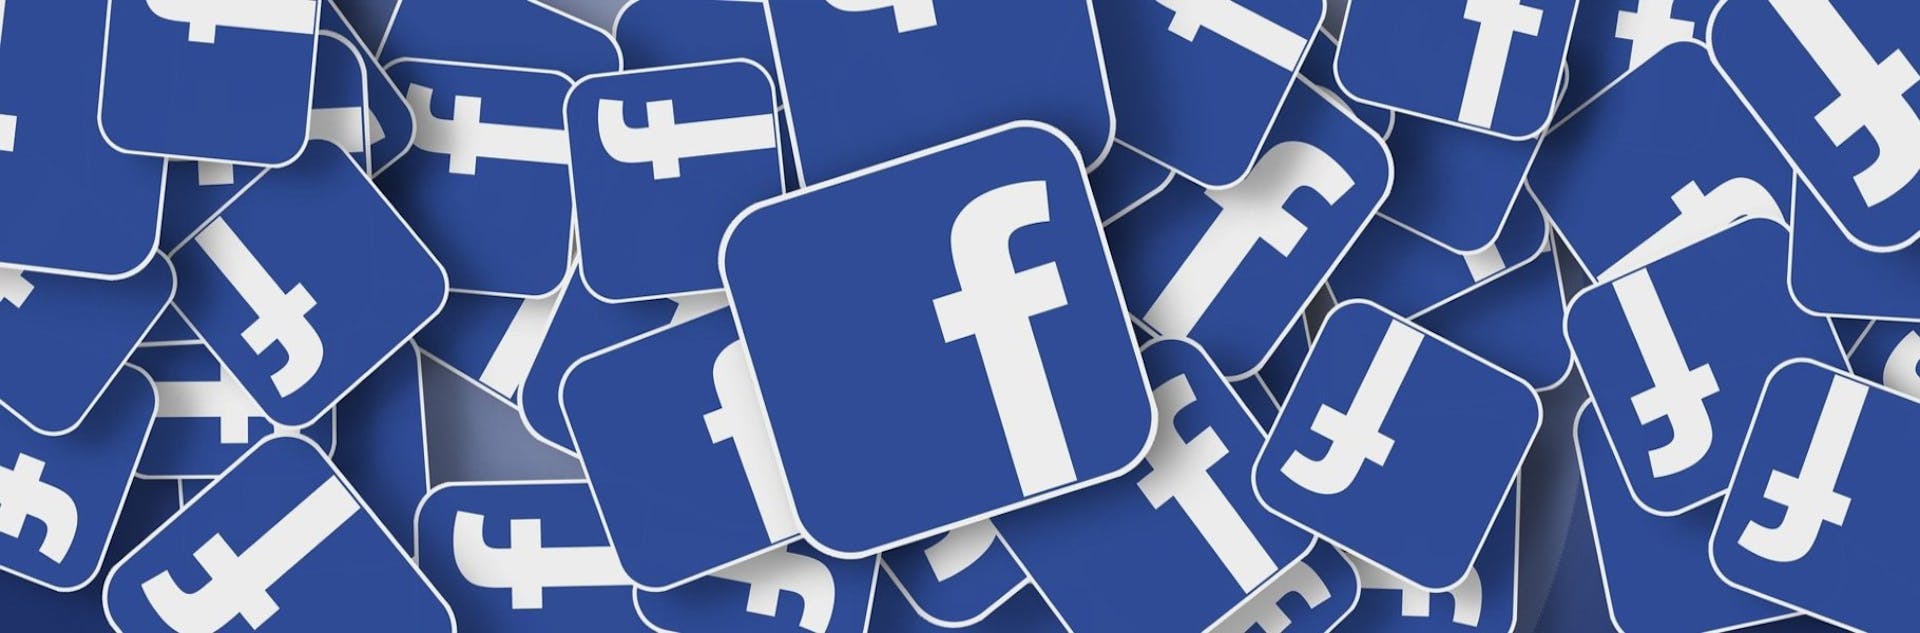 ¿Cómo cambiar el nombre de una página de Facebook y no perder su contenido en el intento?